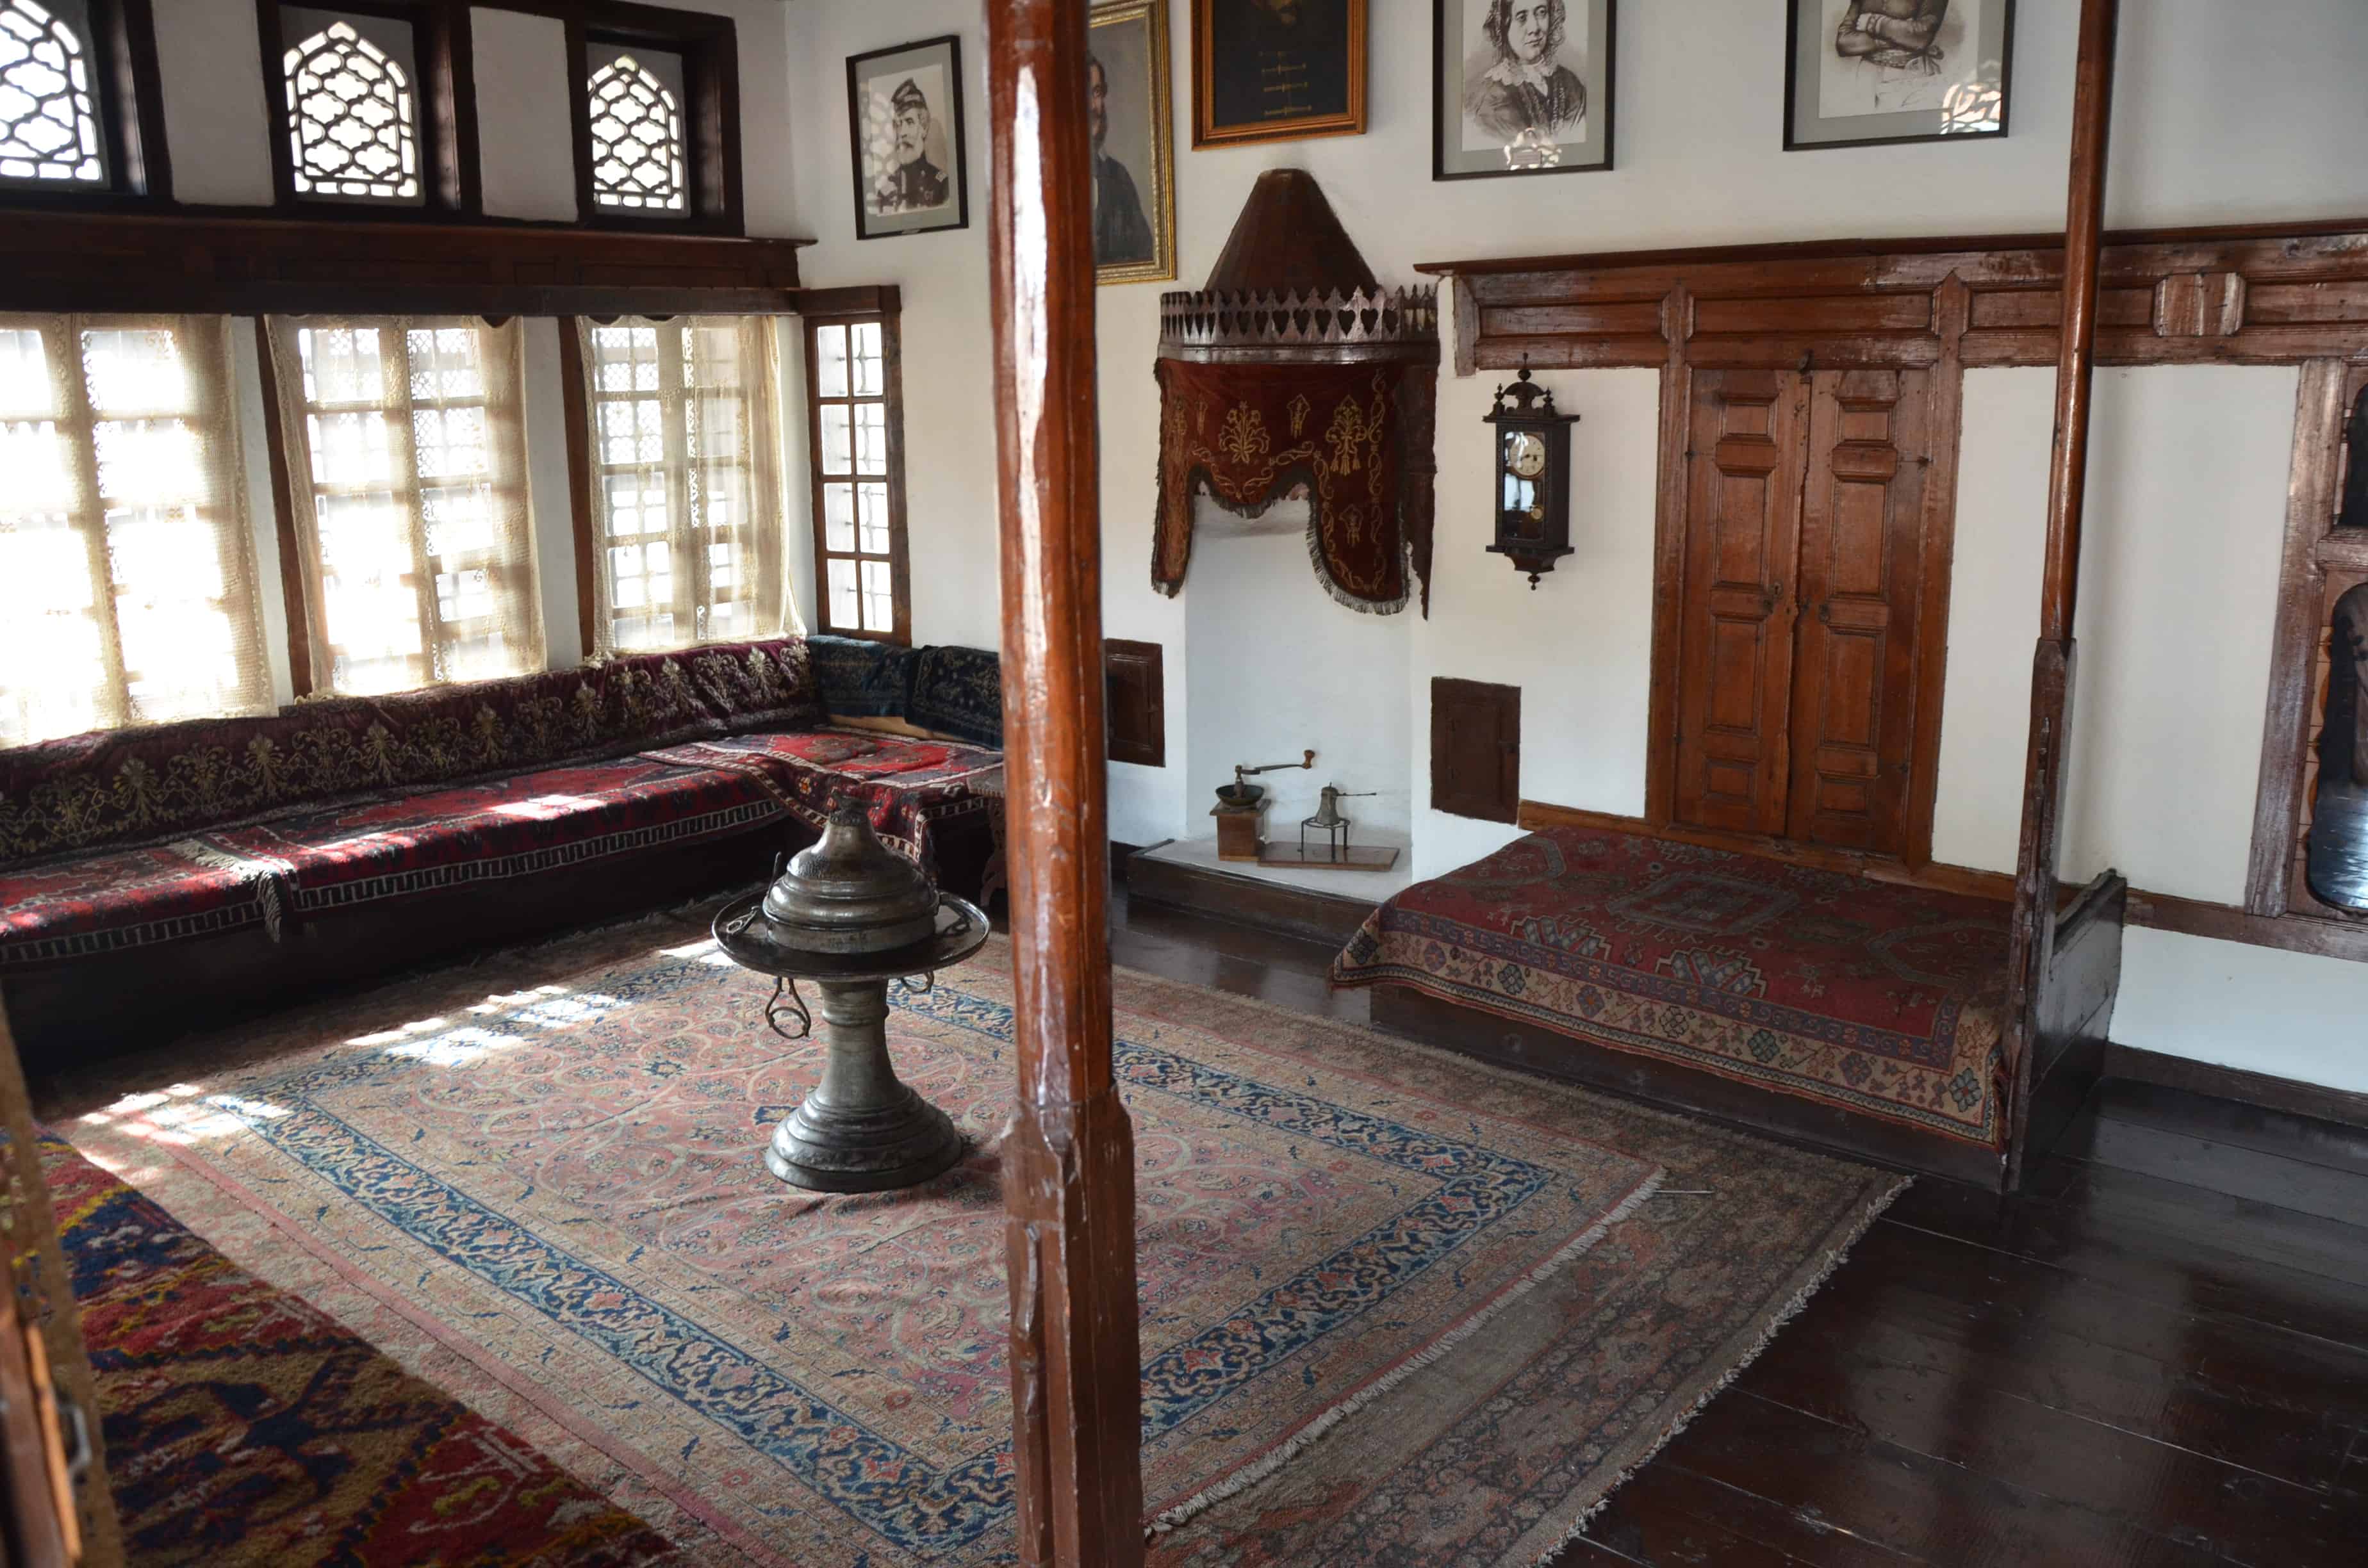 Living room at the Lajos Kossuth House in Kütahya, Turkey